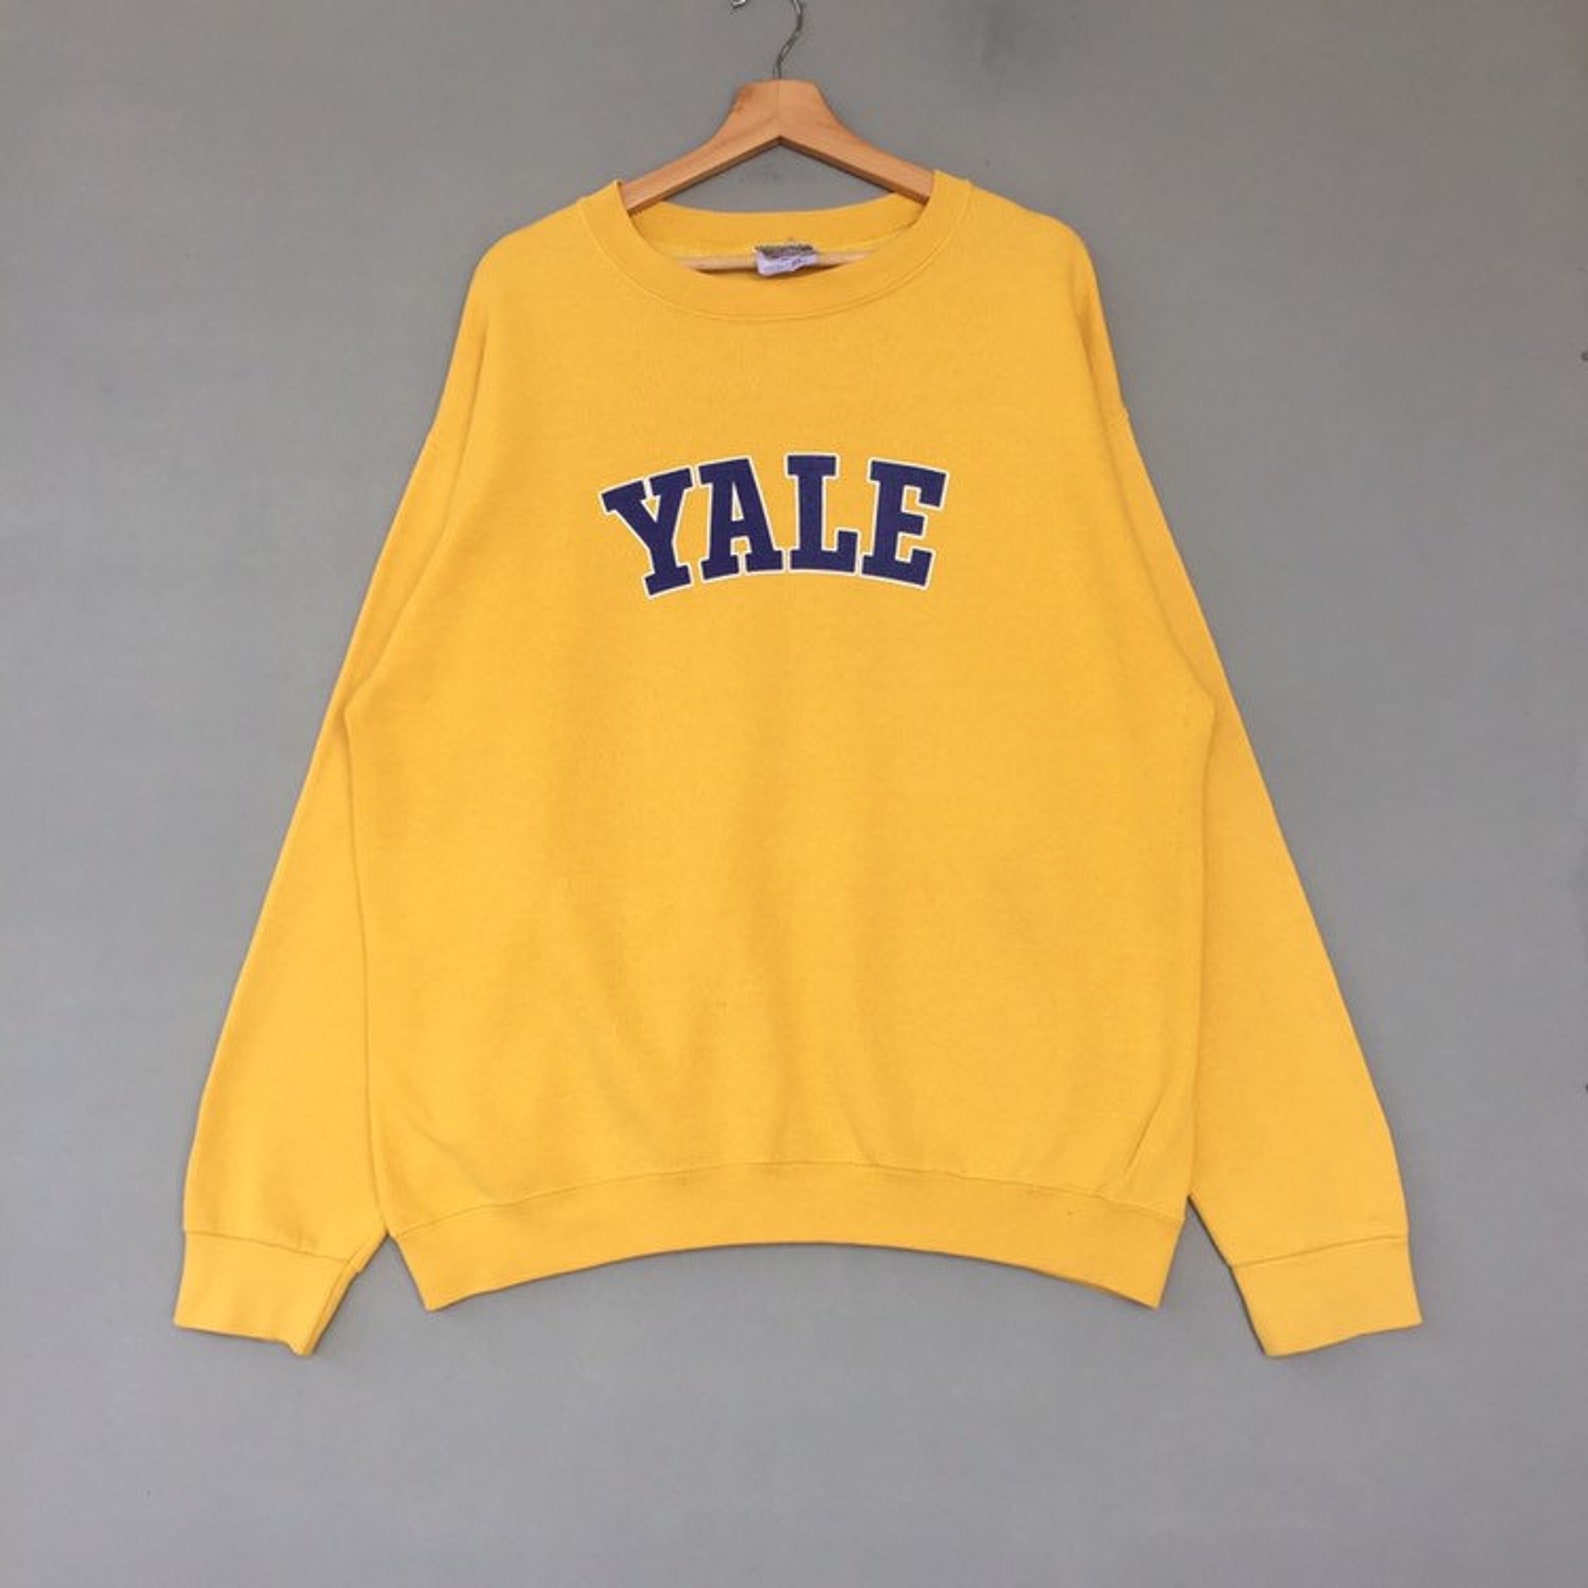 Vintage University of Yale Sweatshirt Crew Neck Print Out Logo - Etsy UK